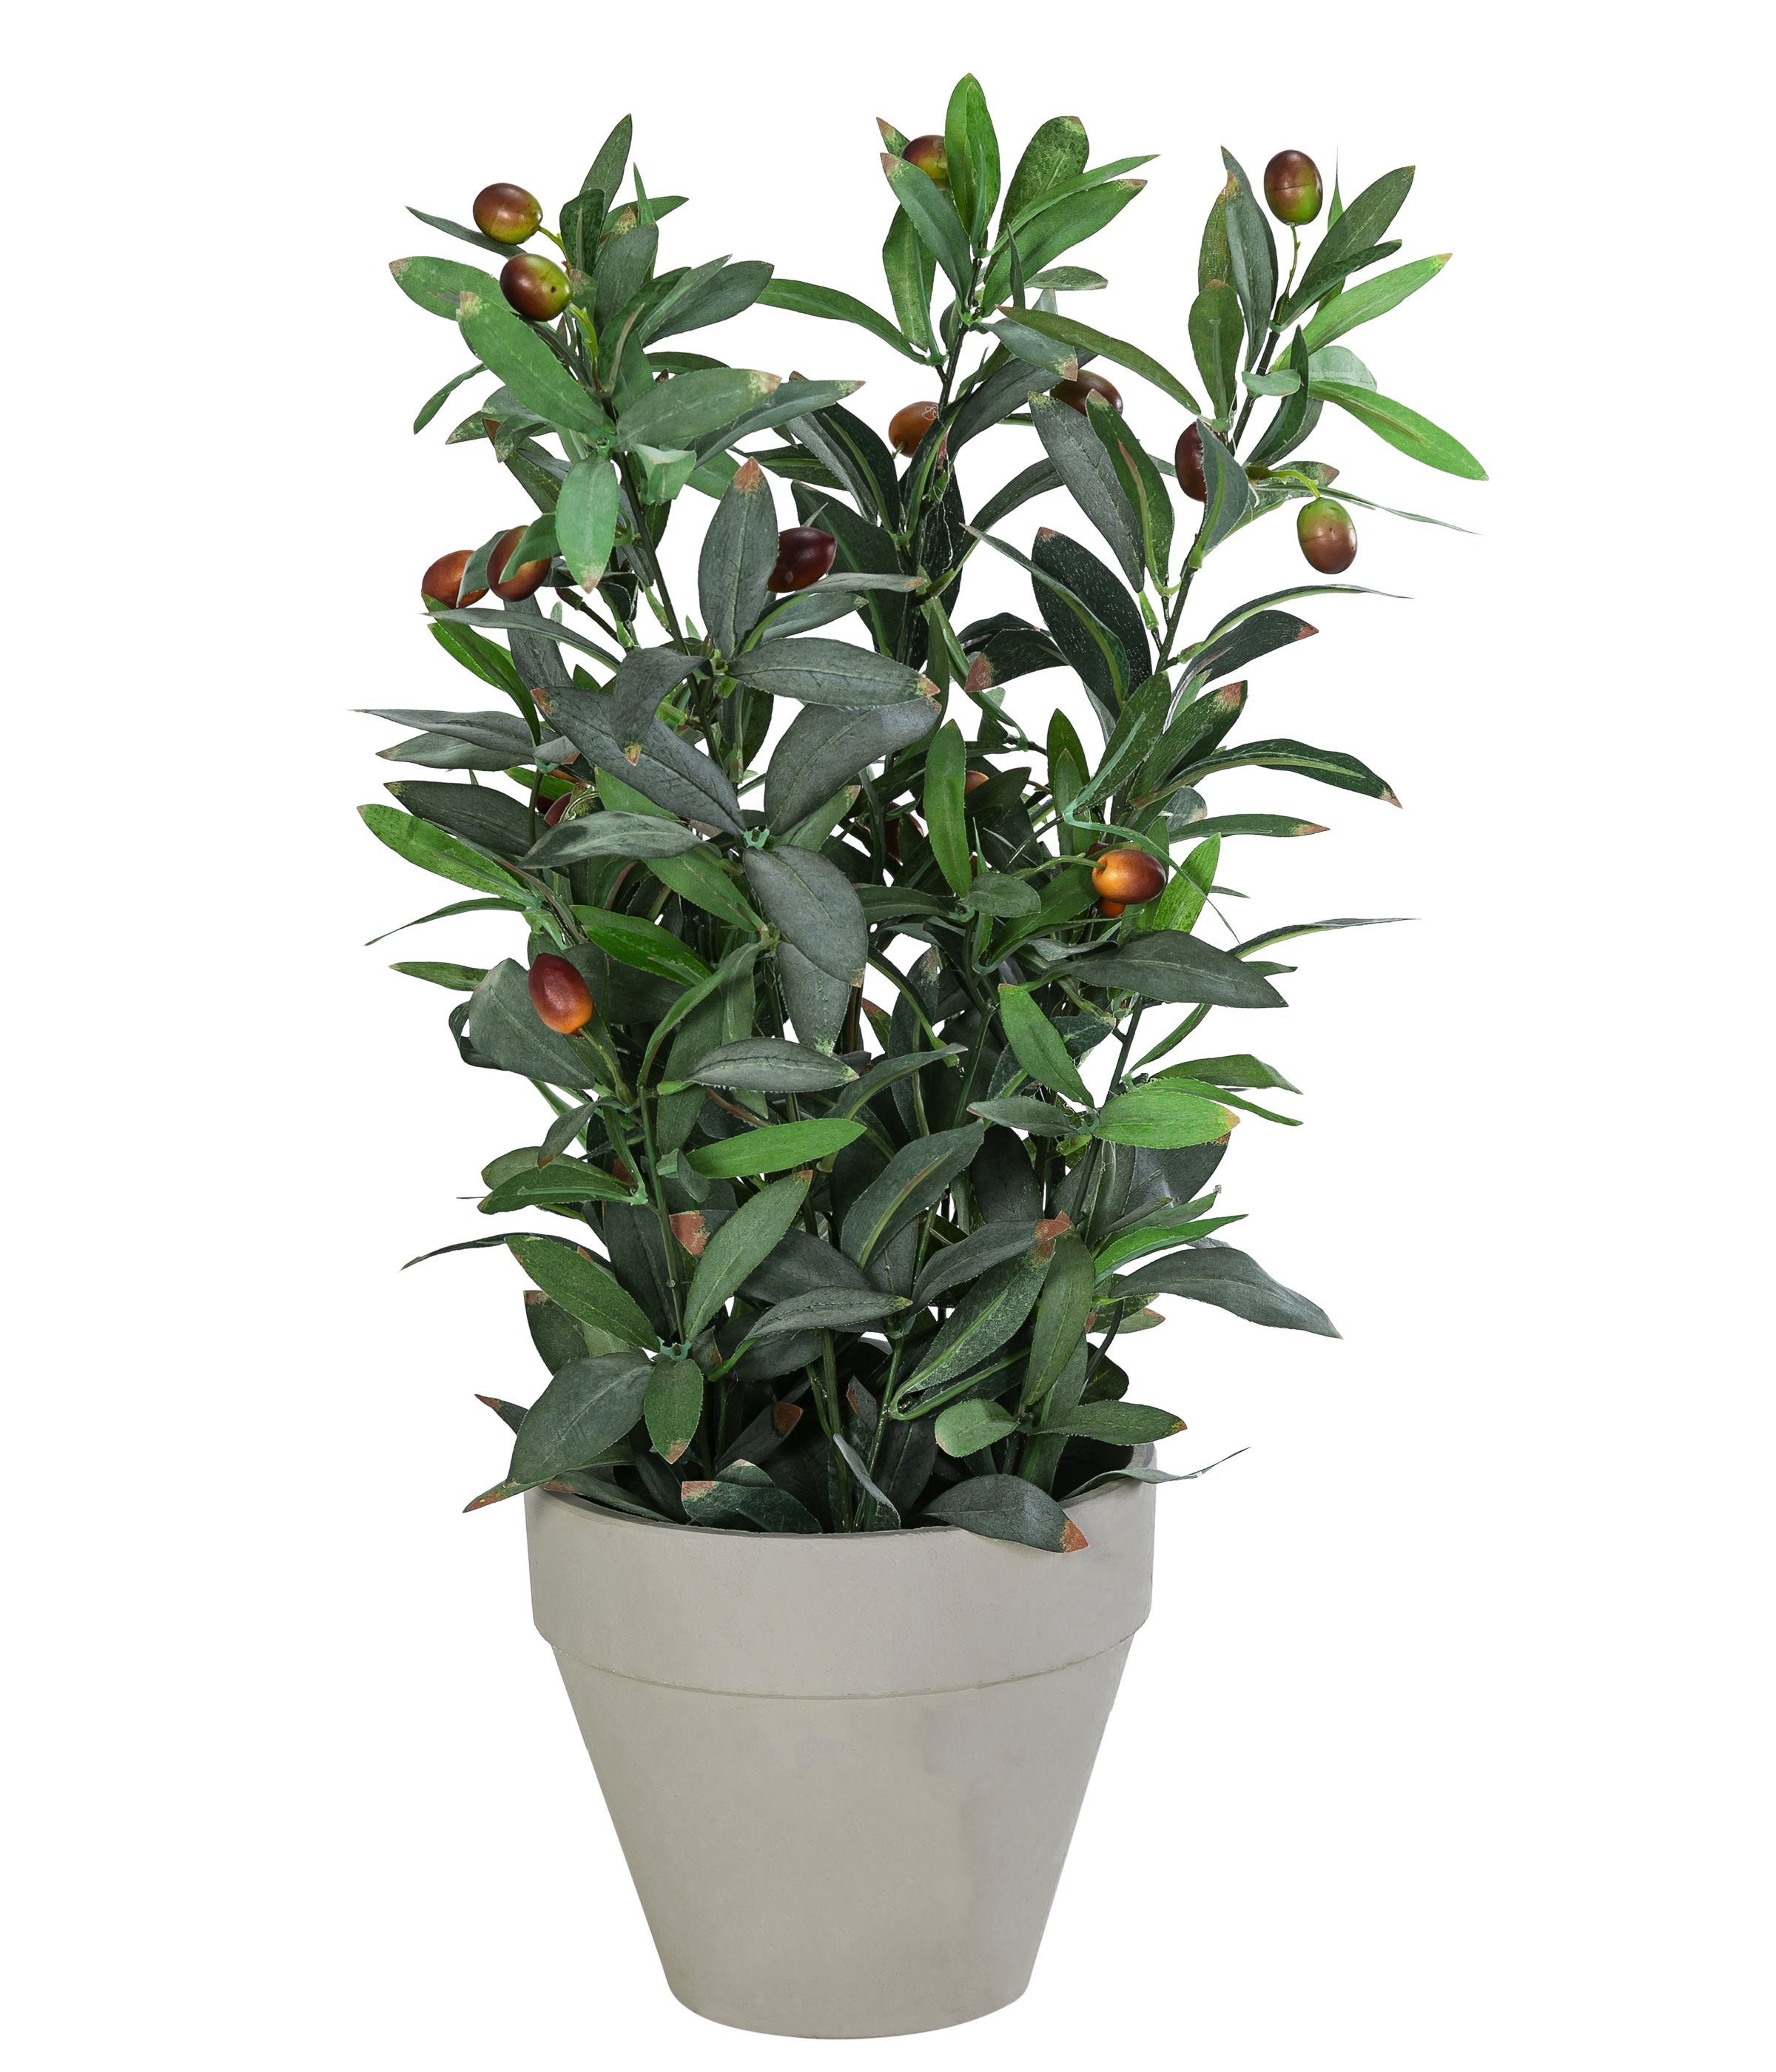 Kunstpflanze Olivenbaum, Polyester/Metall/Papier, ca. 20 x 20 x 42 cm Keine  Angabe, Dehner, Höhe 51 cm, verschiedene Topfgrößen, grün/grau